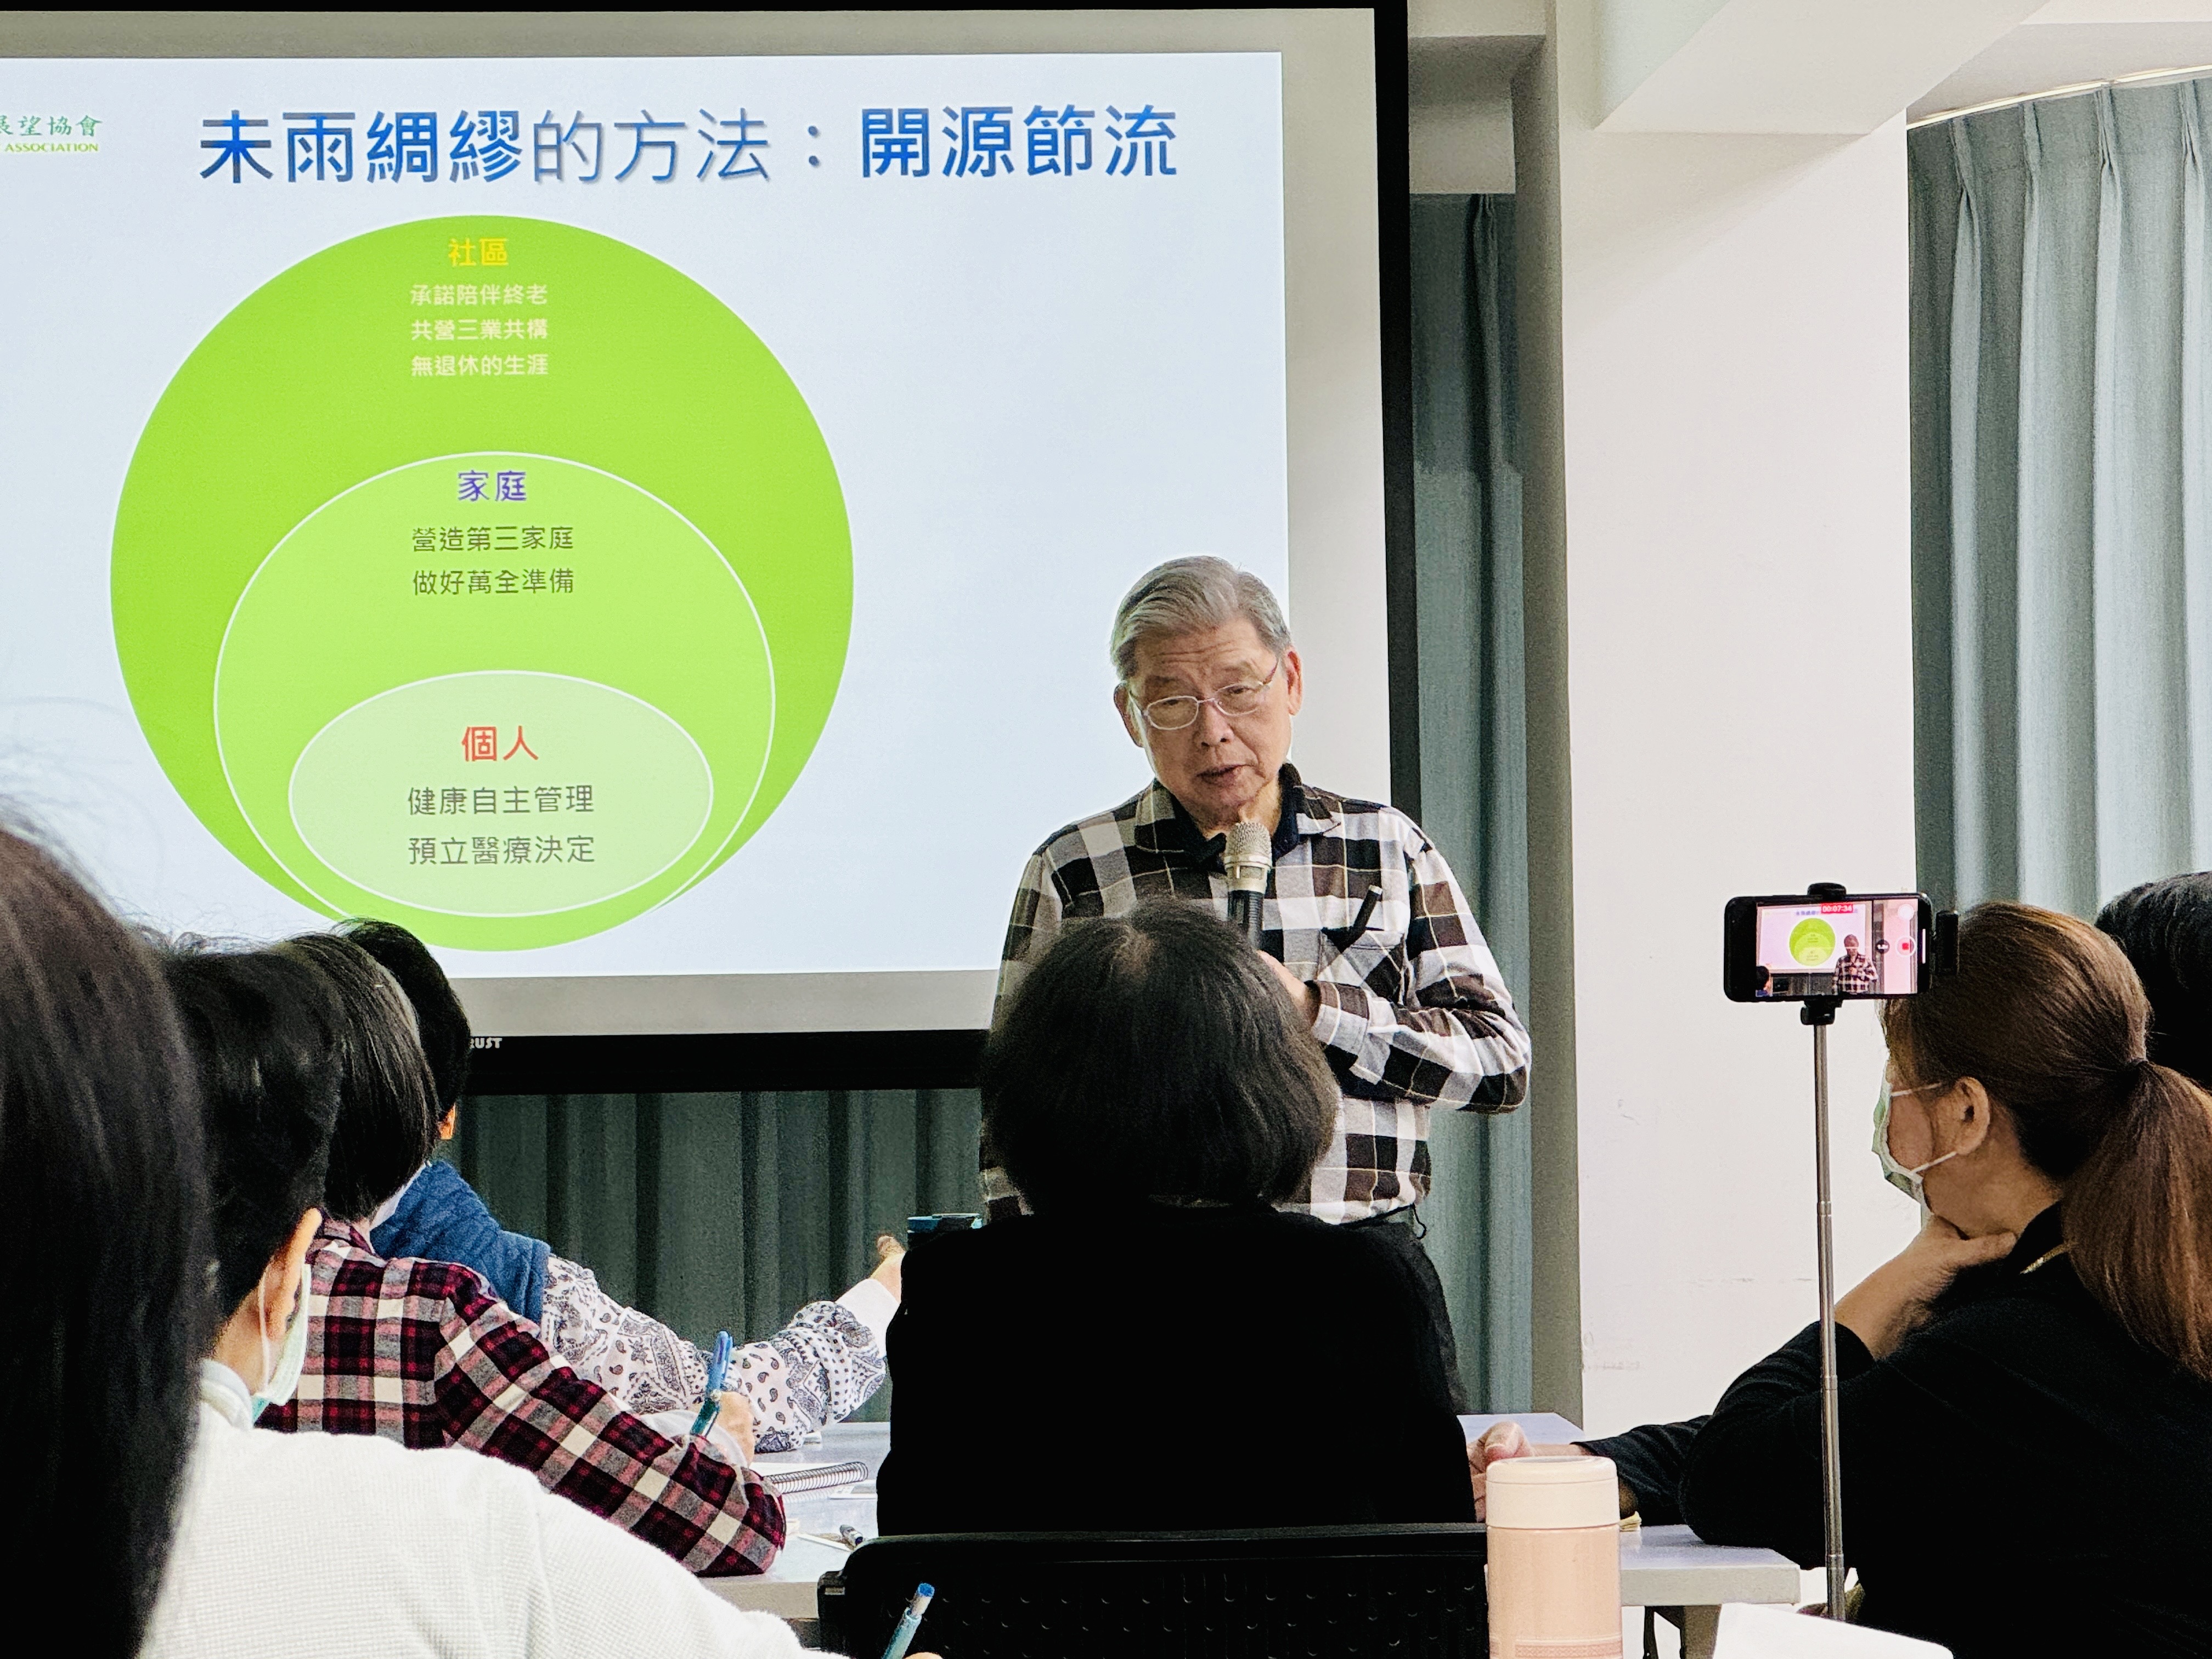 中華民國家庭暨社區展望協會理事長成亮老師分享「第三家庭」的觀念，有助於解決超高齡社會第一、二家庭功能不足的困境。